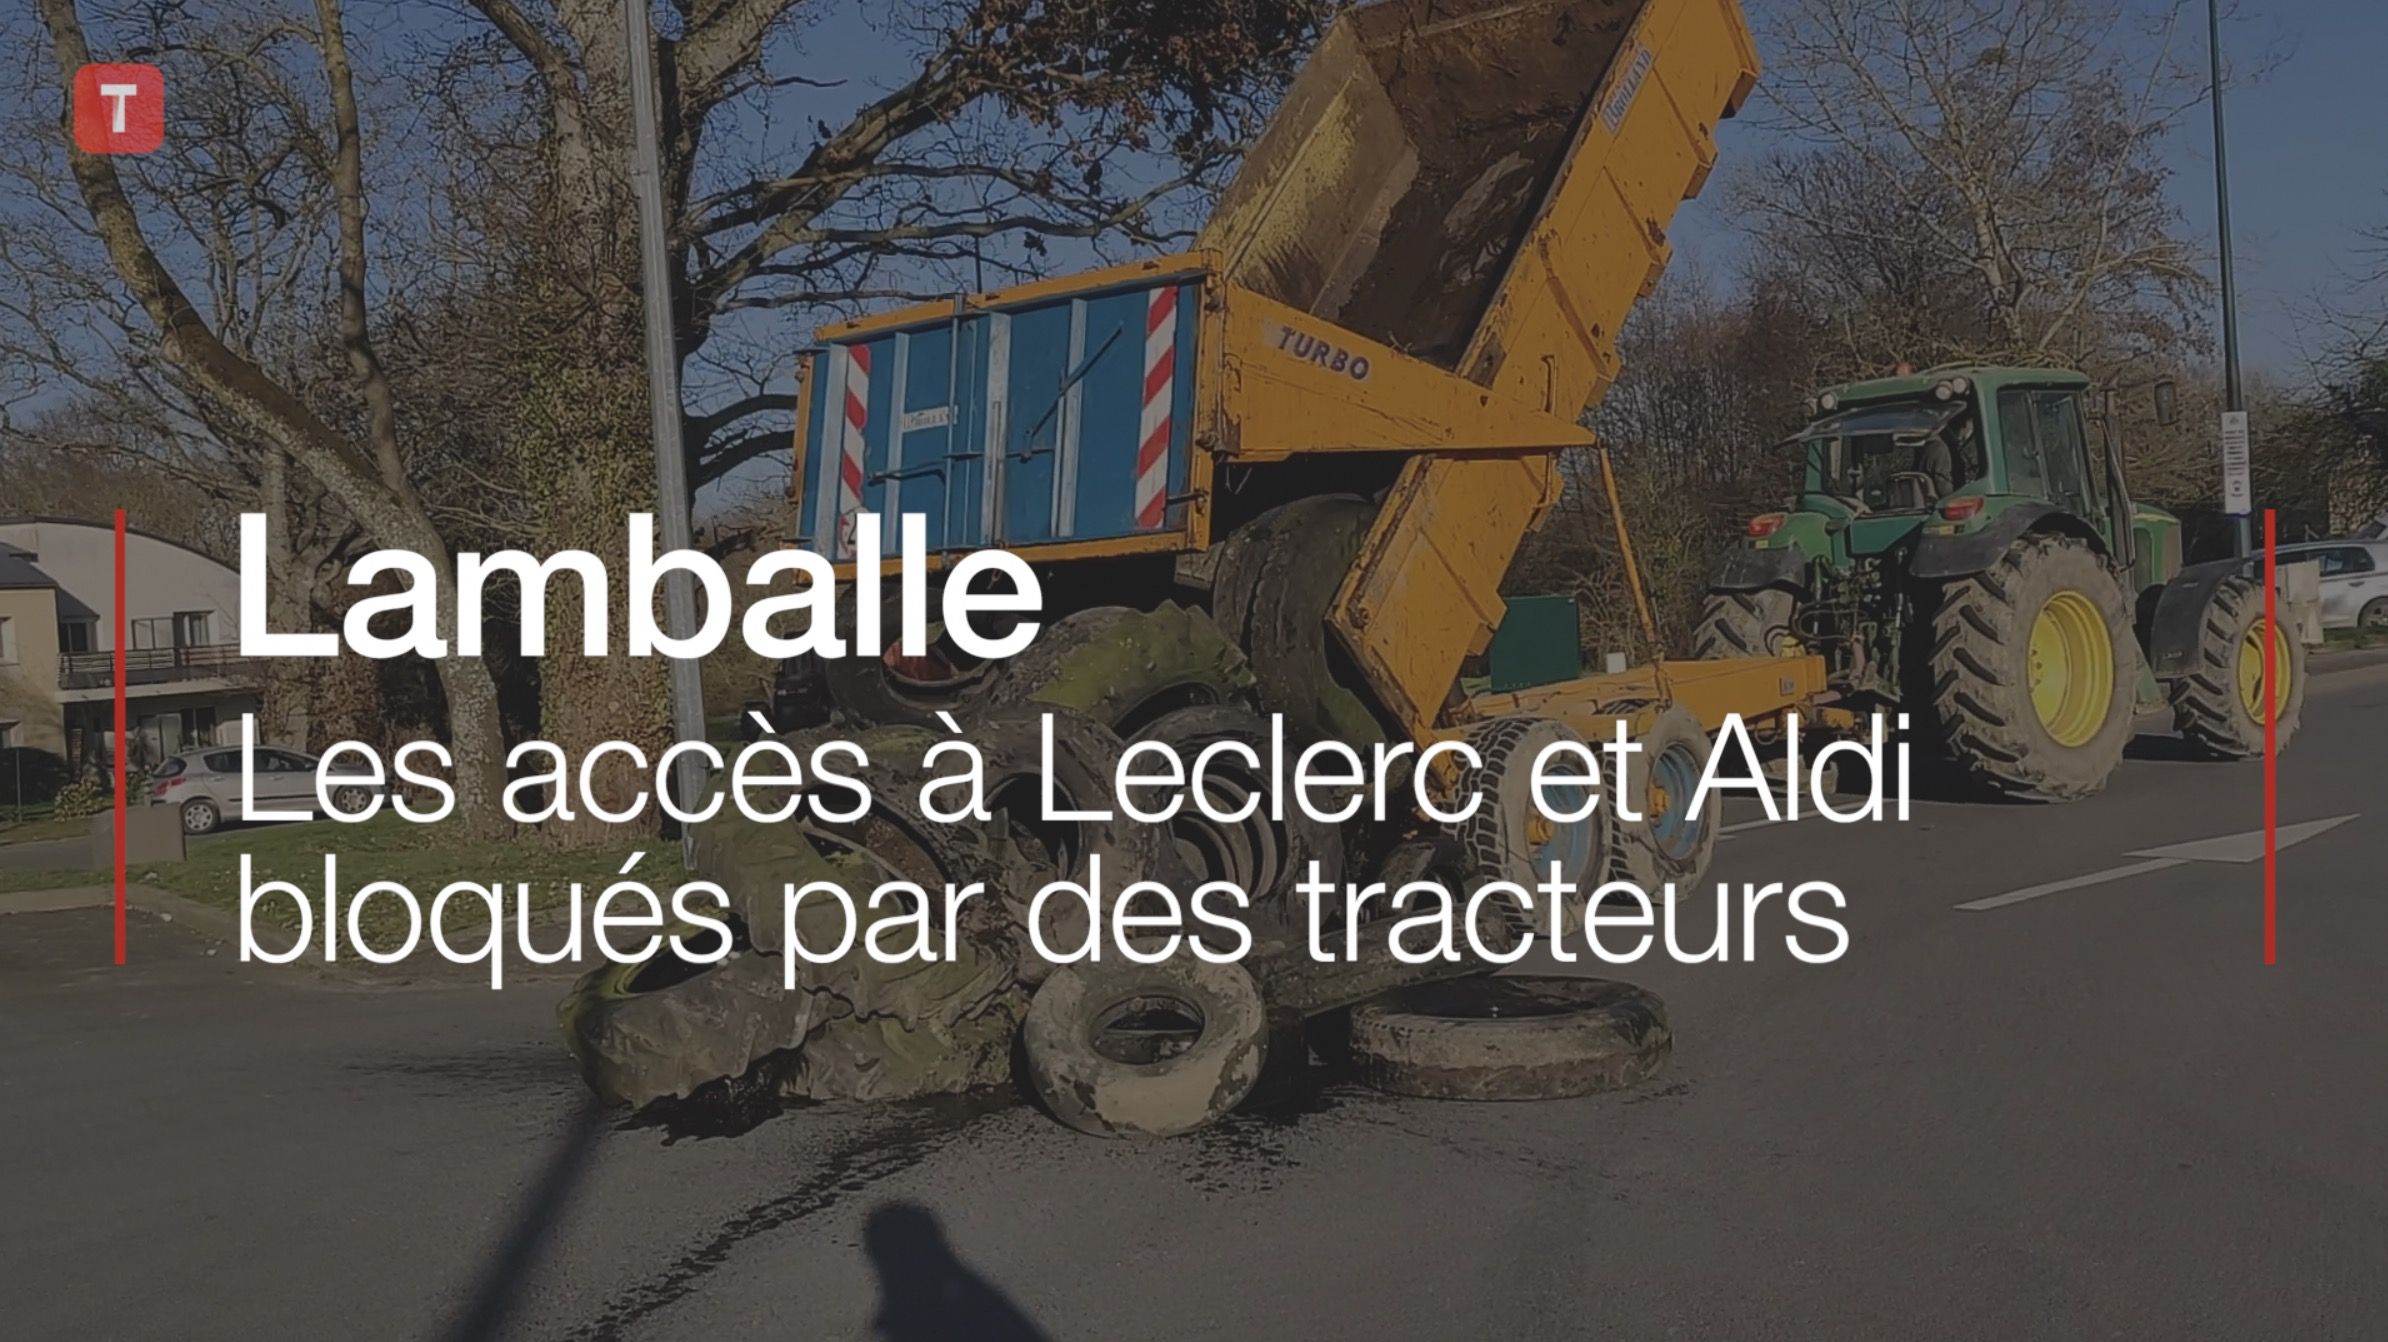 Lamballe. Les accès à Leclerc et Aldi bloqués par des tracteurs (Le Télégramme)